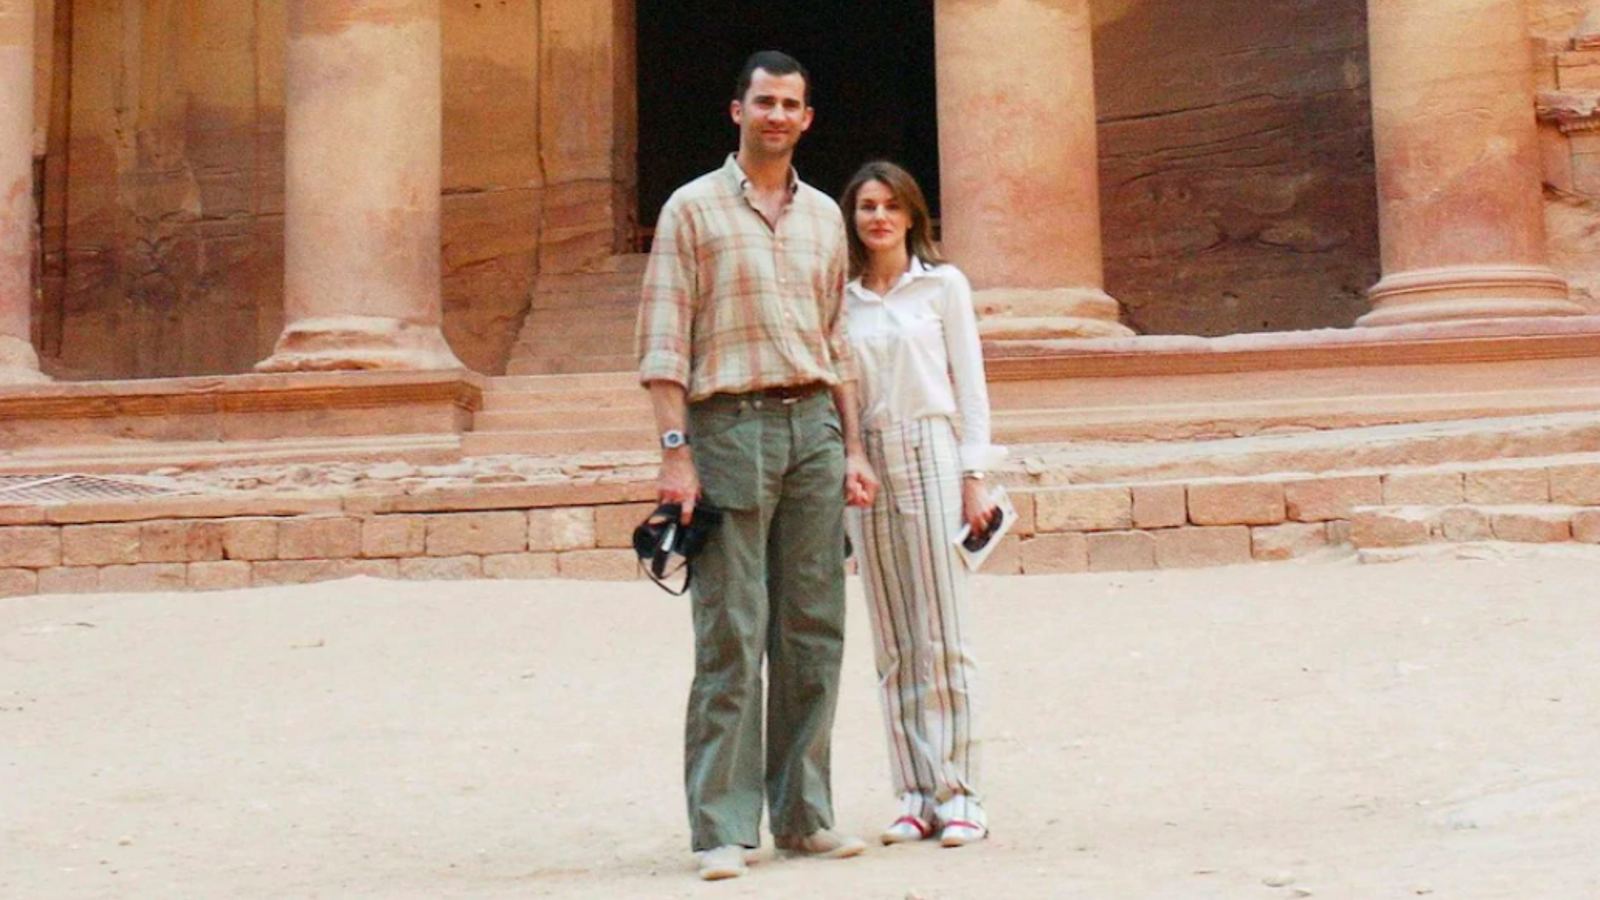 El rei Felip VI i la seva dona, Letícia, en una imatge del 2004, durant una visita a Petra, com a part del seu viatge de noces / SHUTTERSTOCK